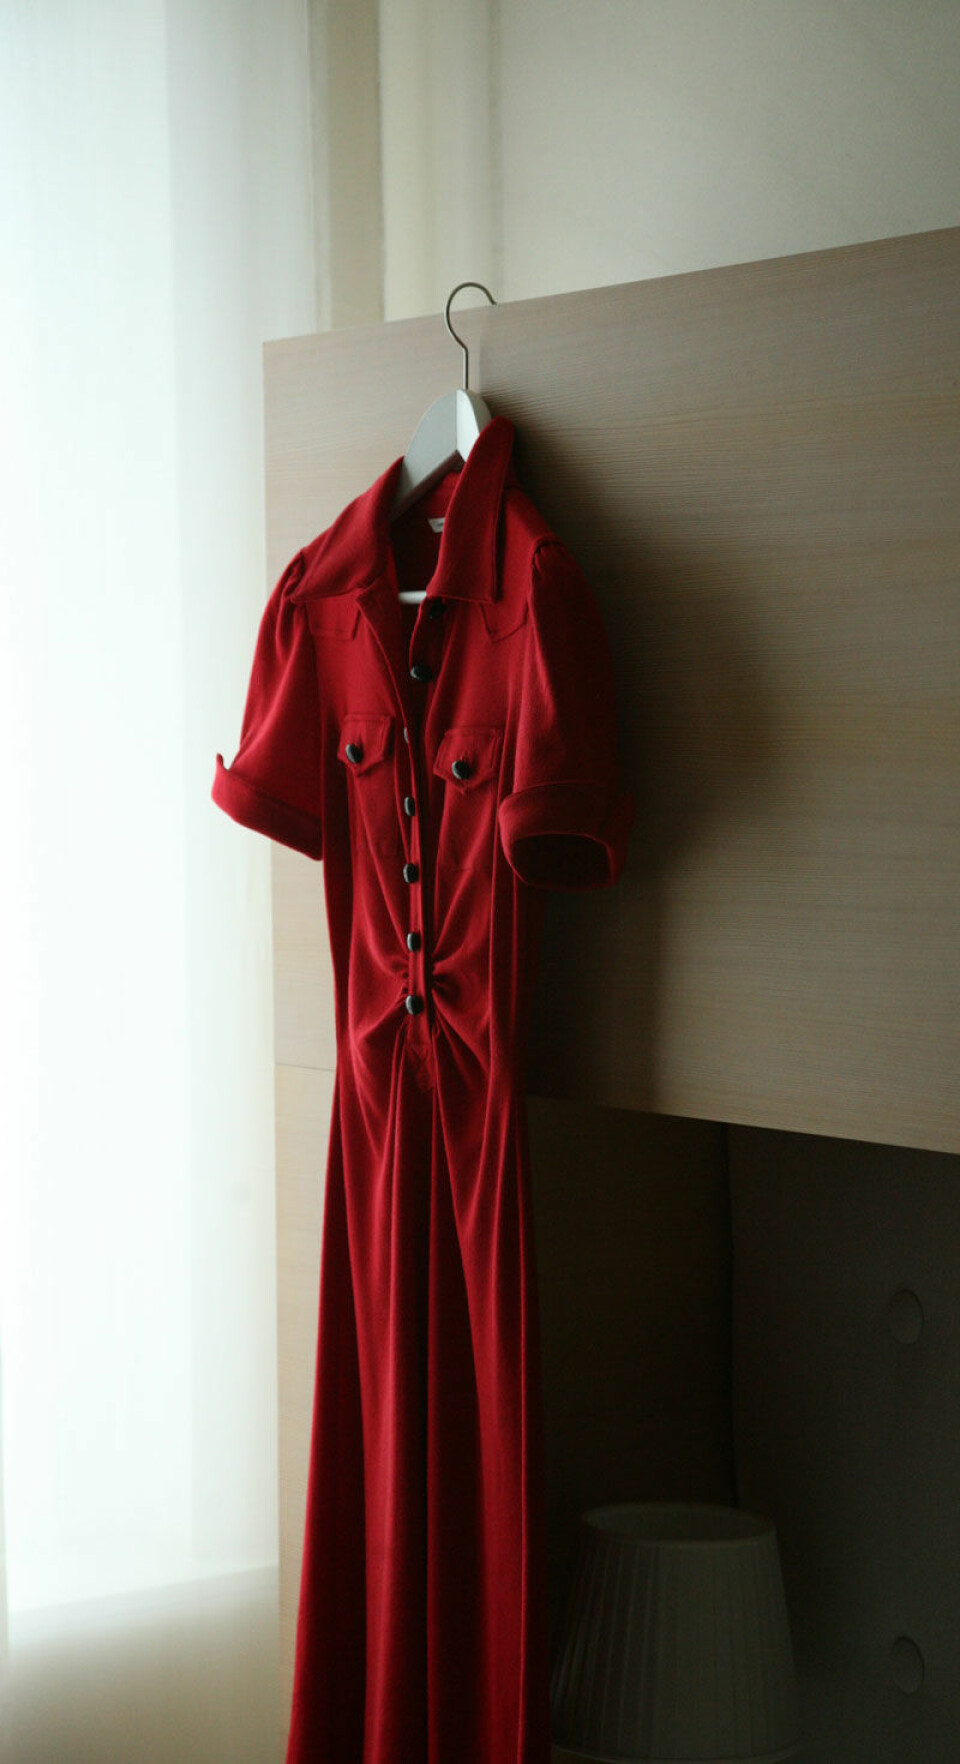 'Det er ingen grunn til å la den røde kjolen henge ubrukt, ifølge den nye studien. I hvert fall ikke for kvinner som liker å føle seg begjært.  (Foto: Colourbox.com)'